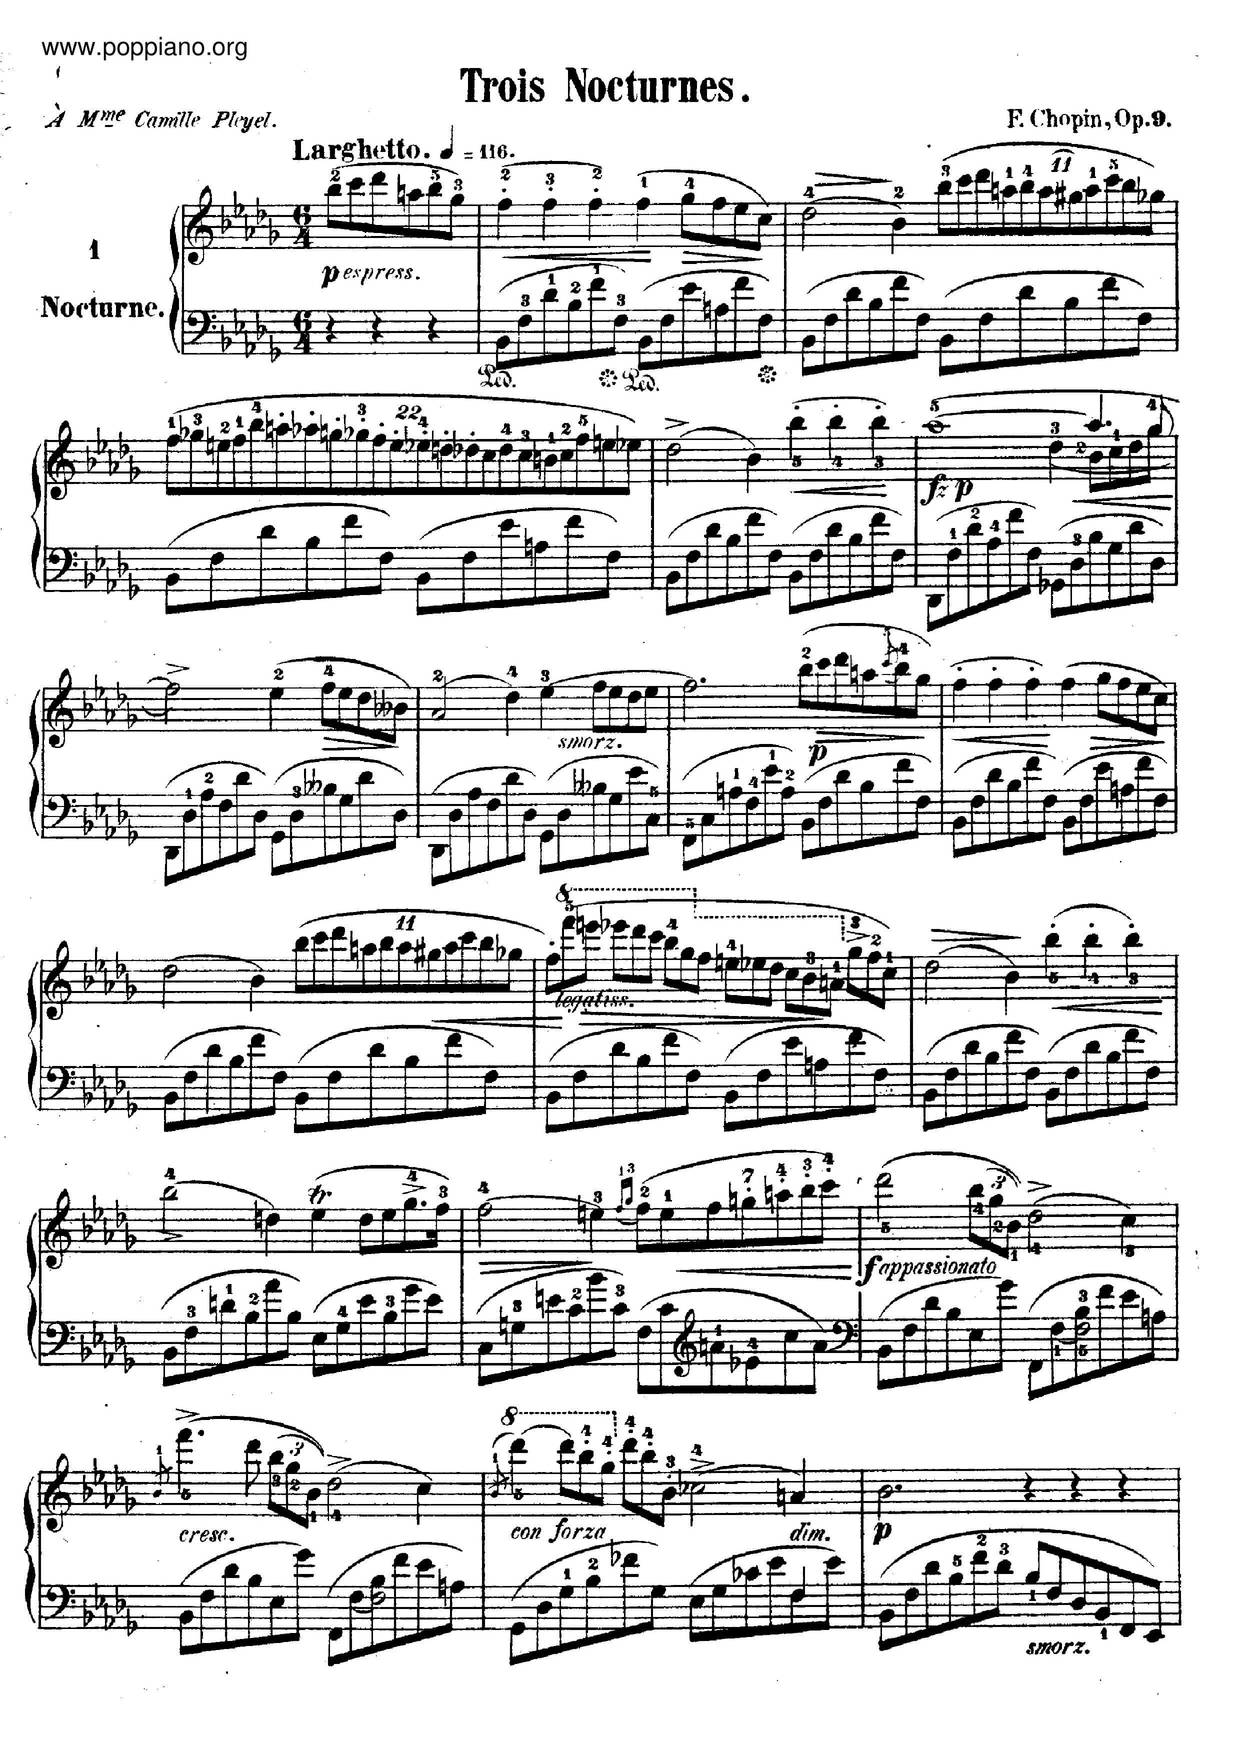 Nocturne Op. 9 No. 1 in B flat minor琴譜